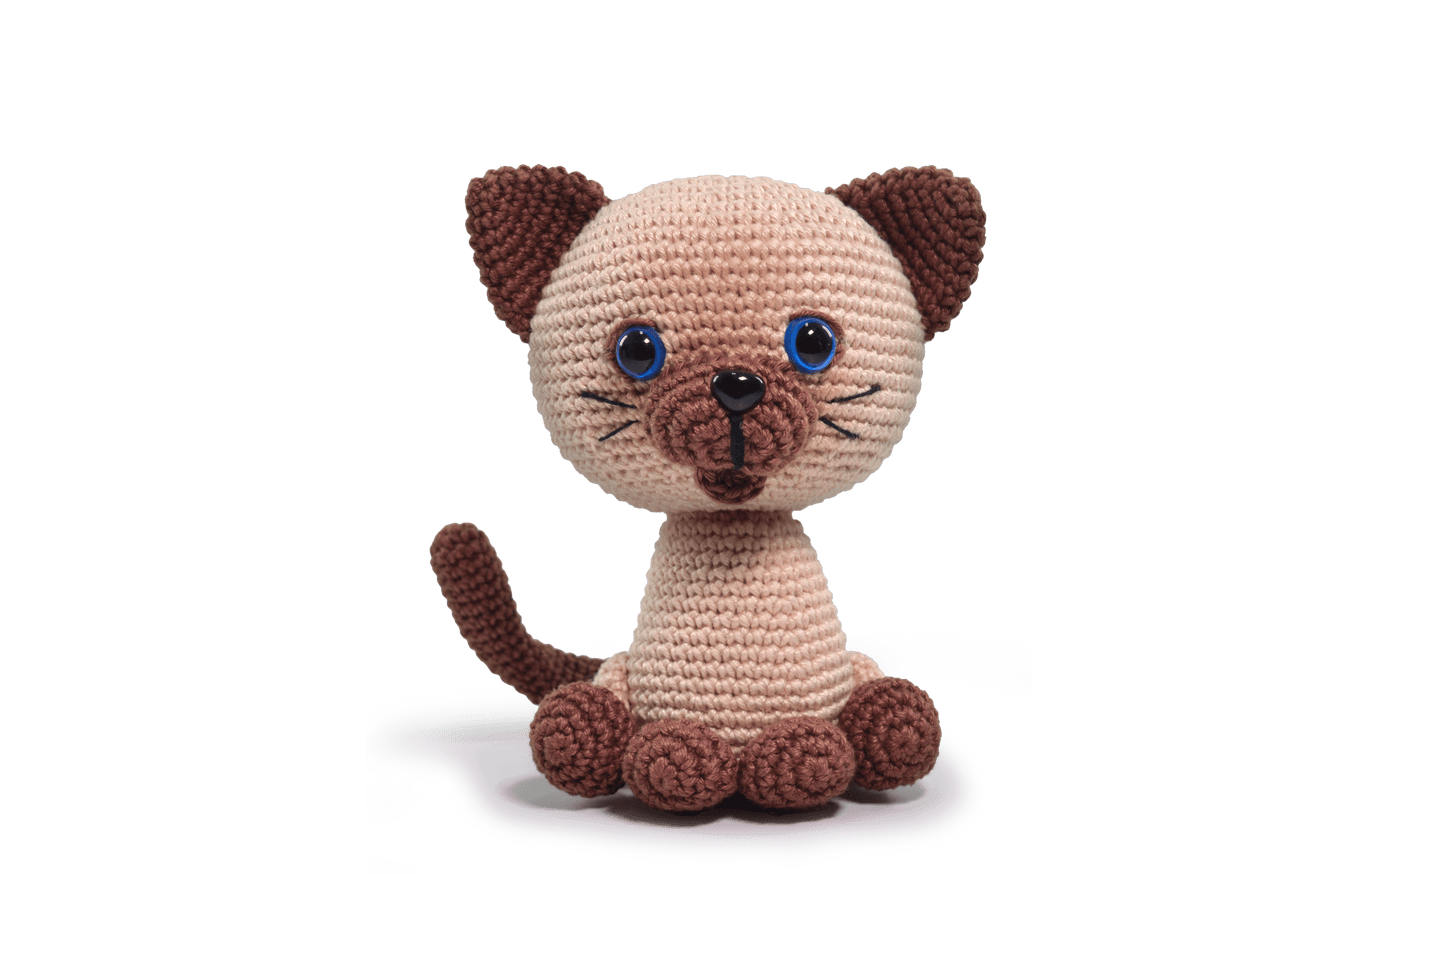 Circulo Amigurumi Kits Cats and Dogs SIAMESE CAT 05 - Leo Hobby